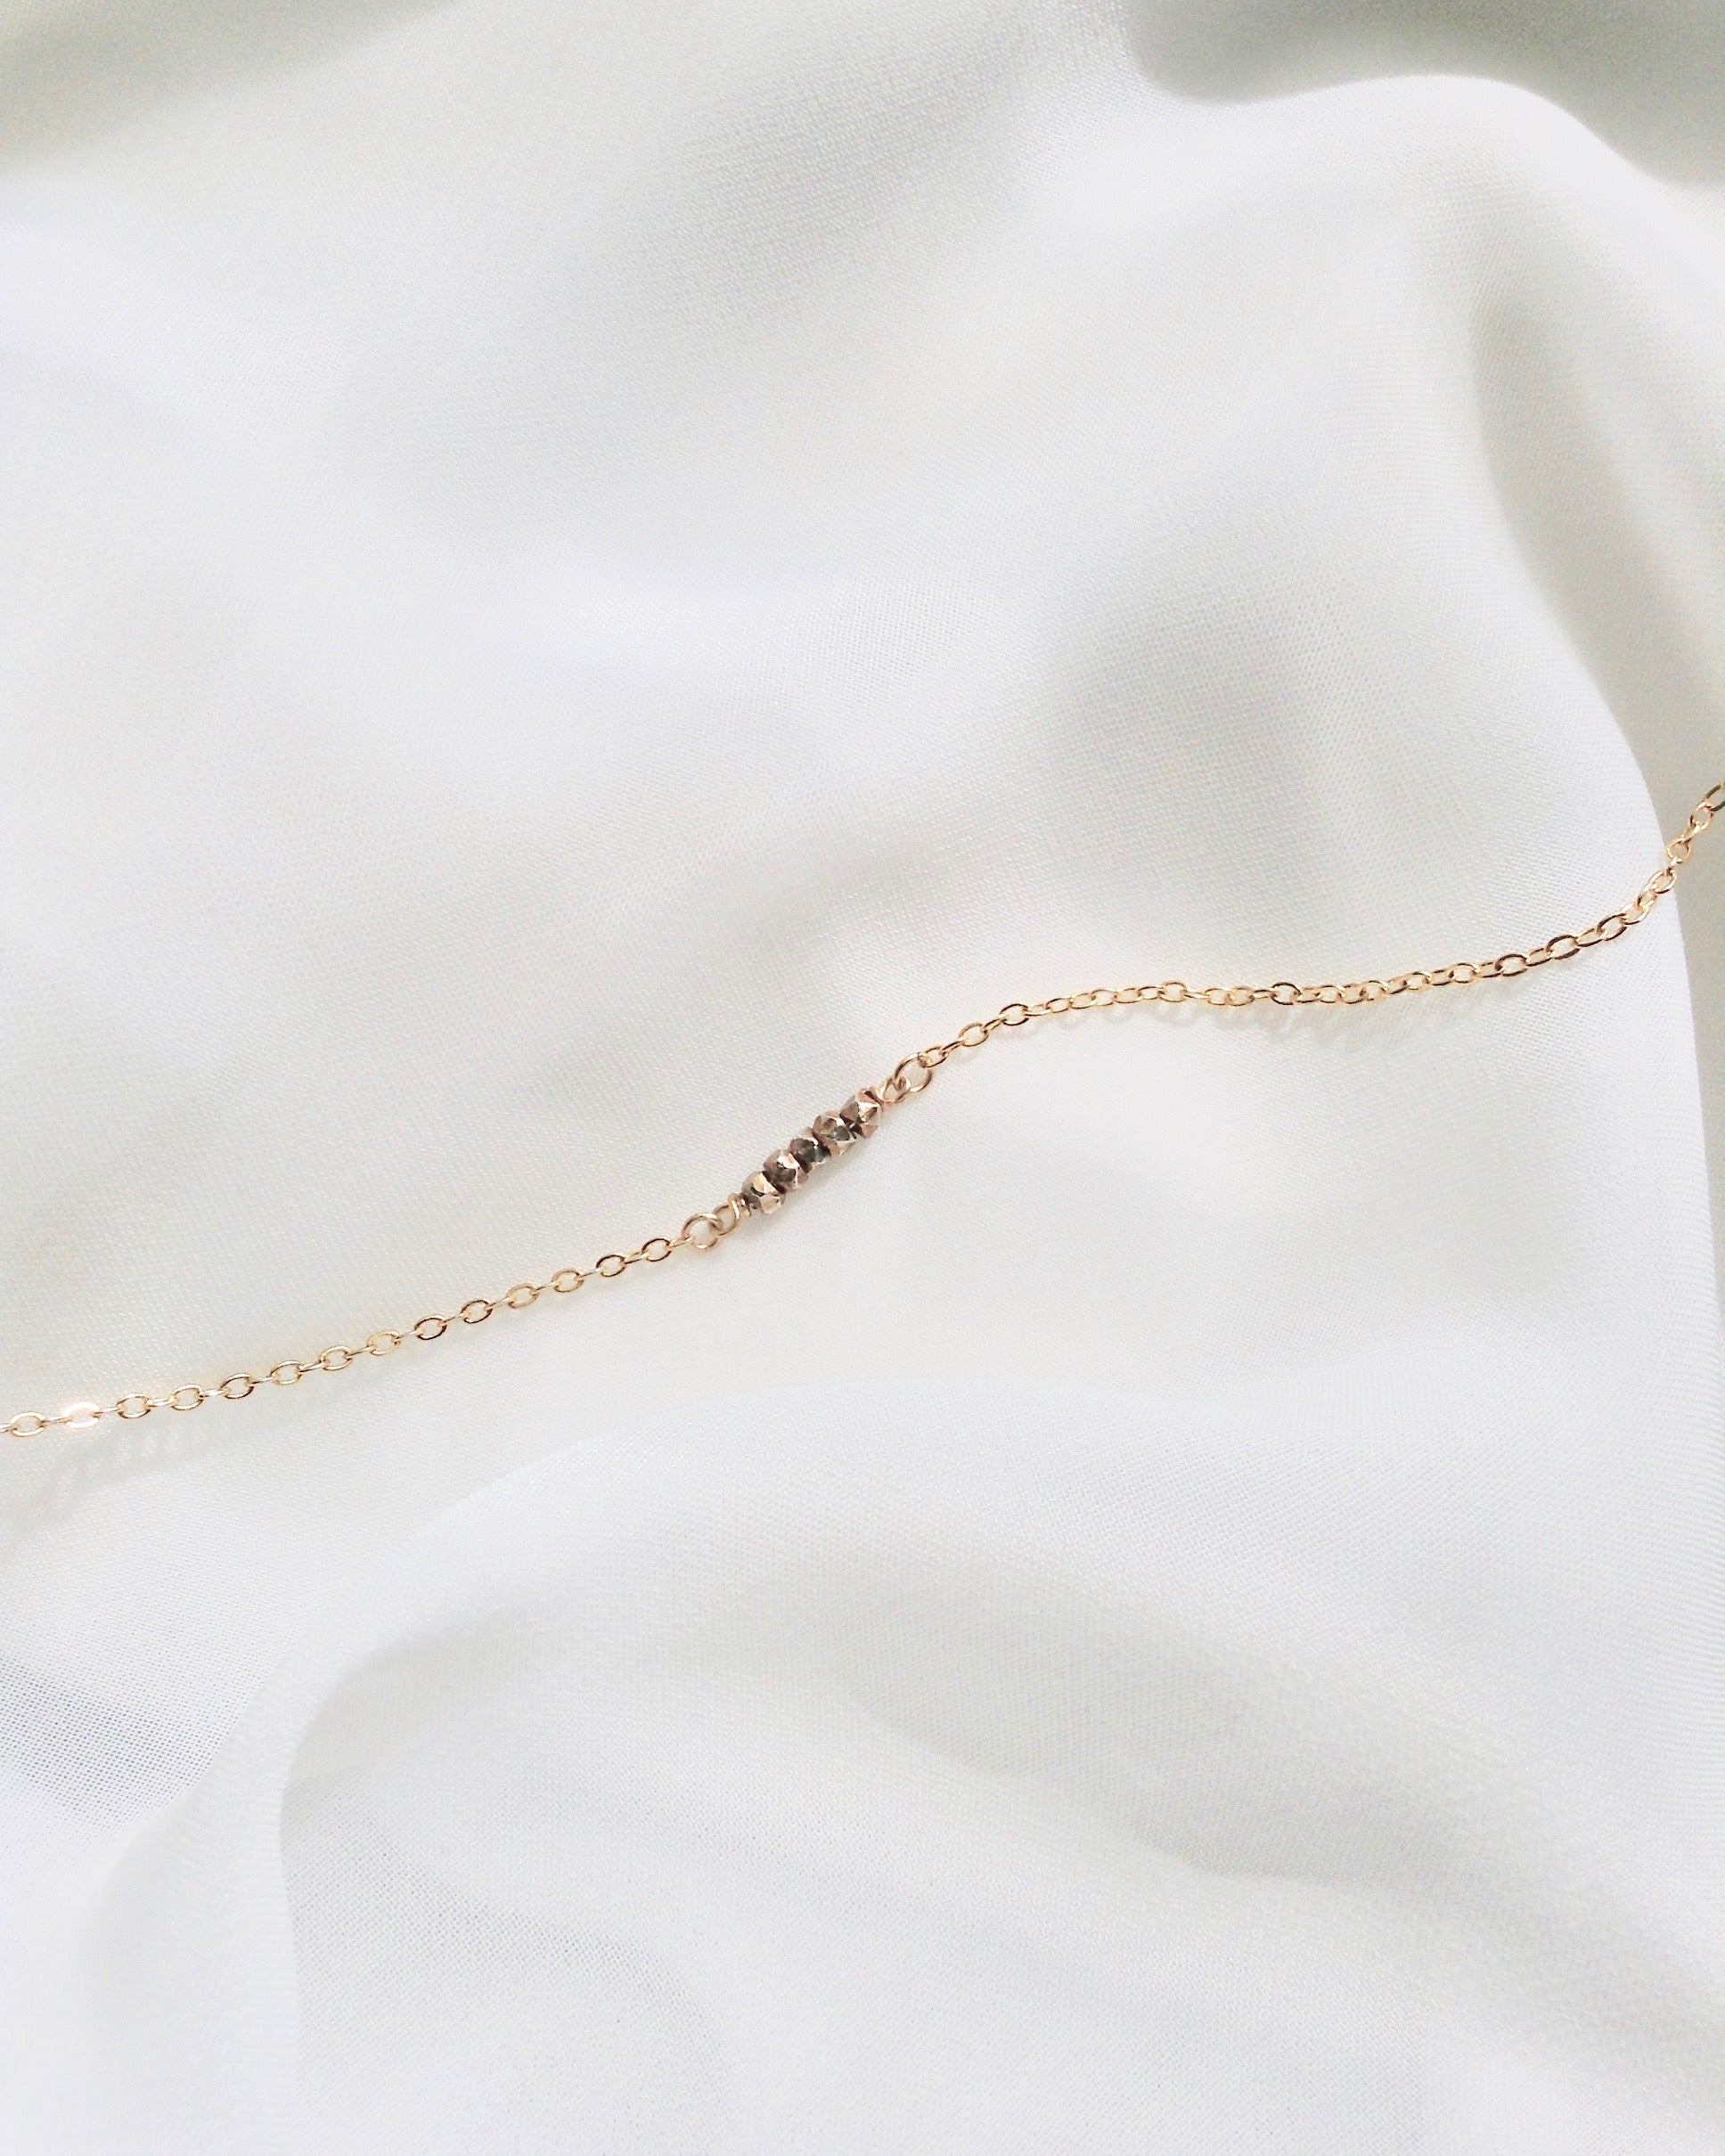 Tiny Nugget Bracelet | Thin Chain Bracelet | Minimalist Dainty Everyday Bracelet | IB Jewelry